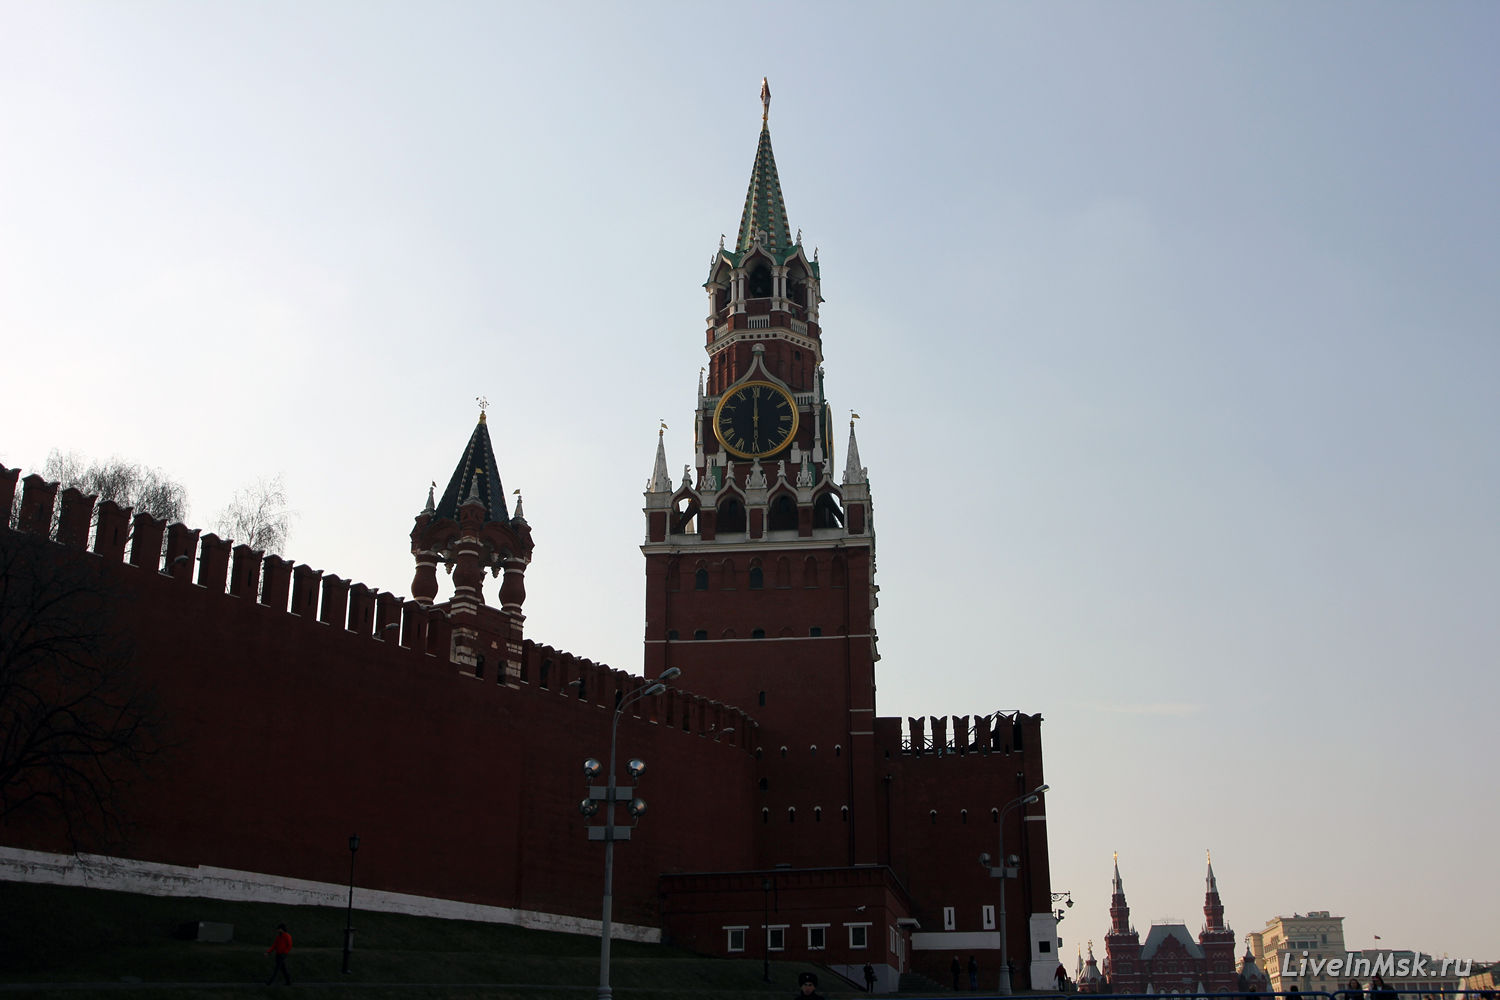 Царская башня Московского Кремля, фото 2015 года